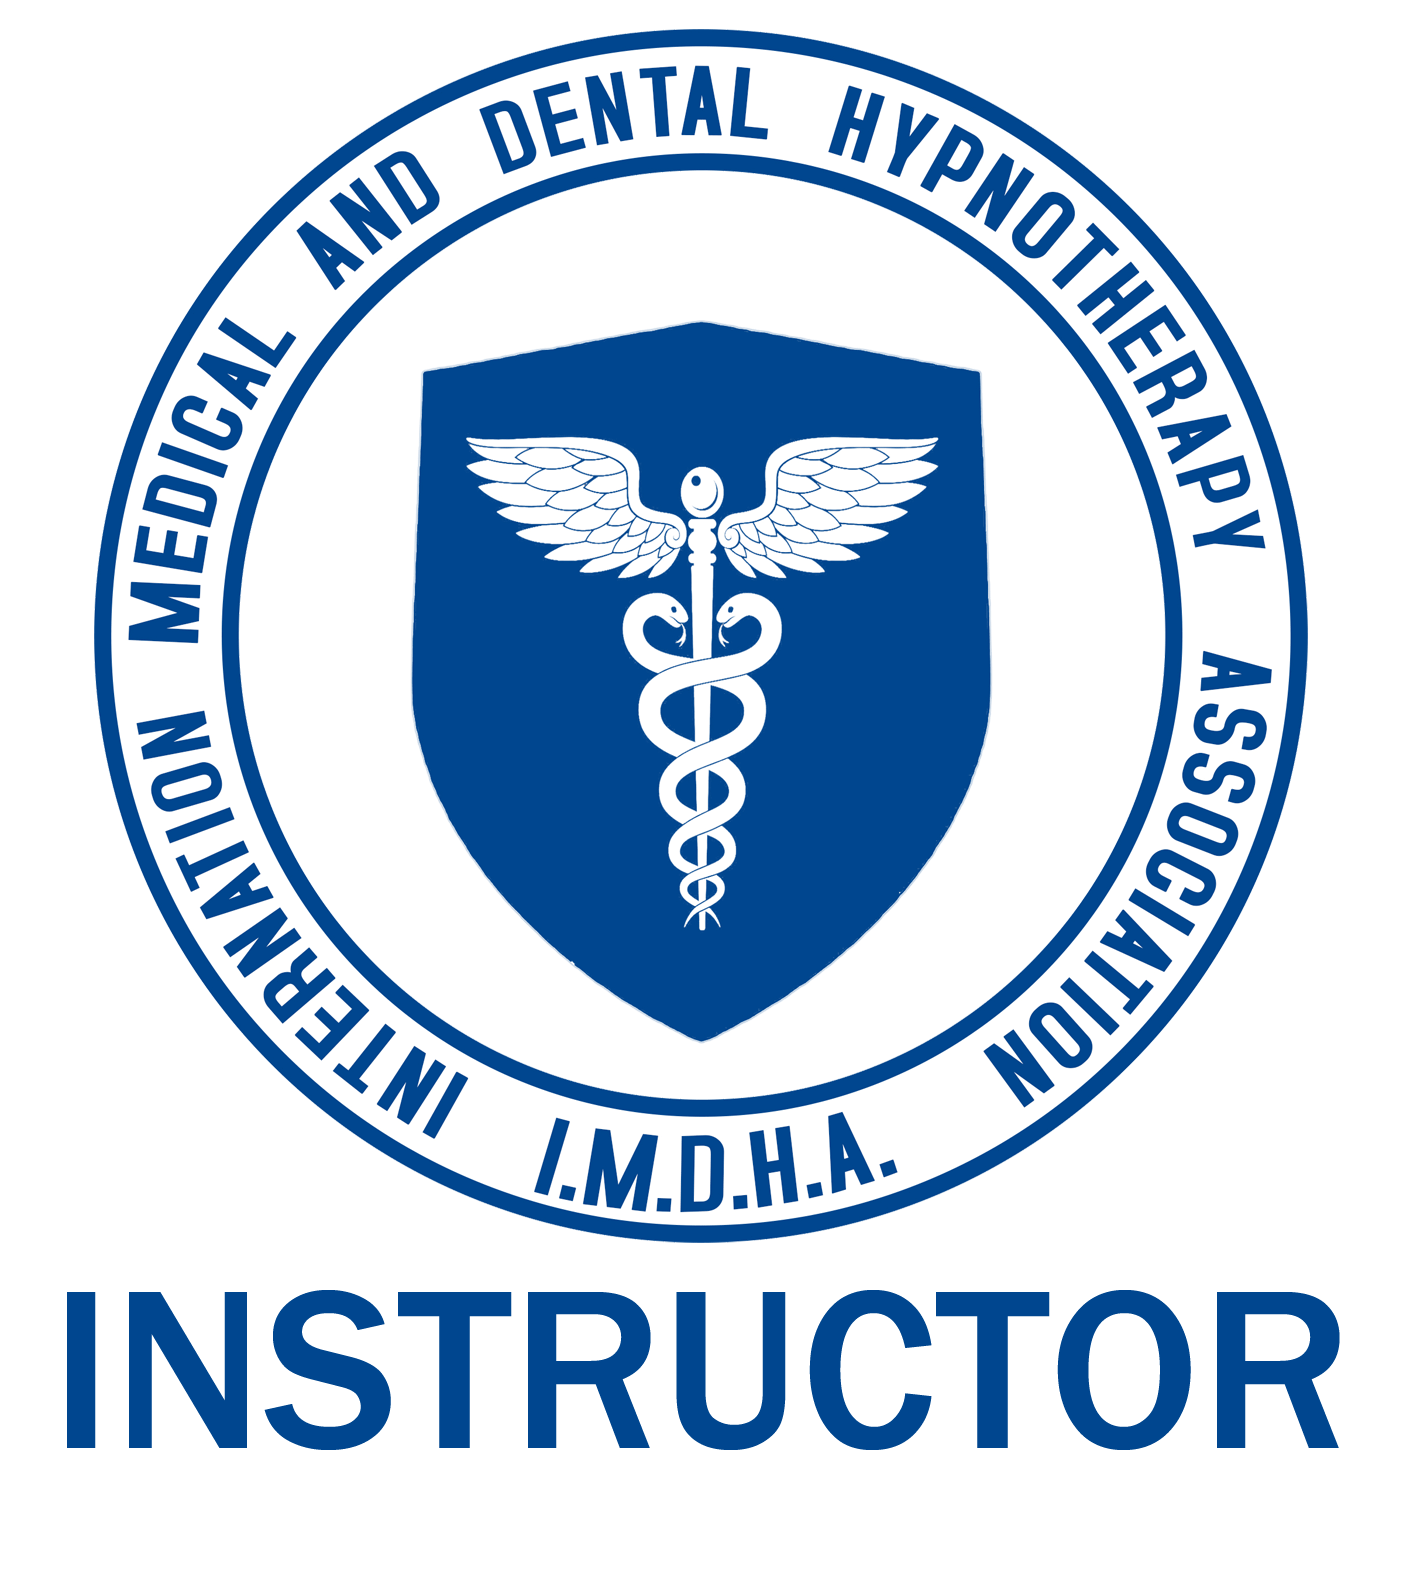 imdha-hr-logo-instructor